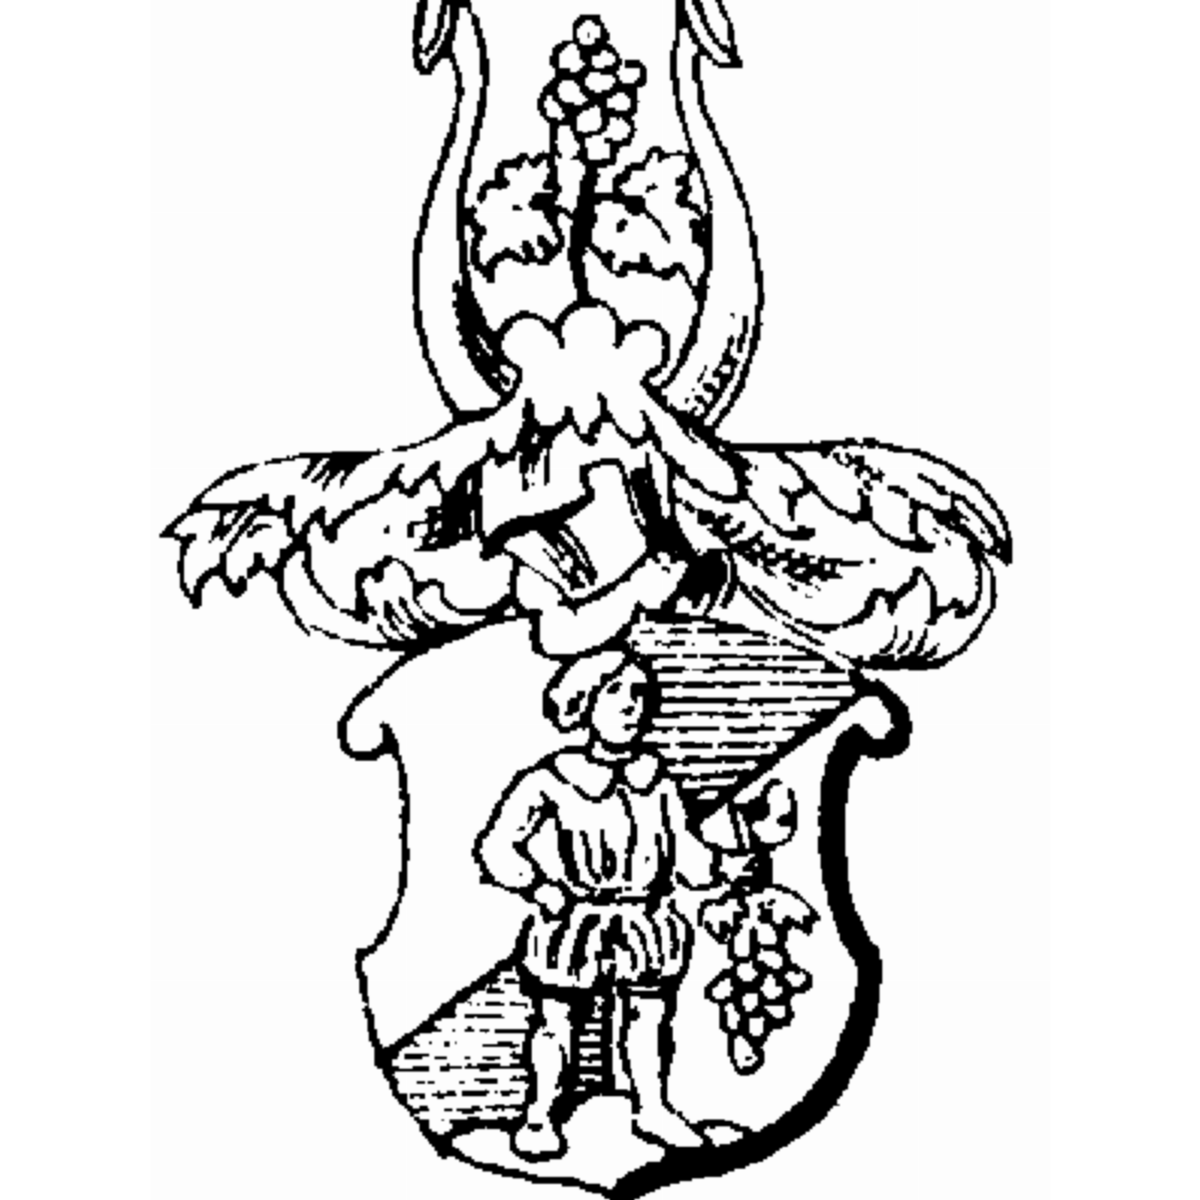 Coat of arms of family Radekker